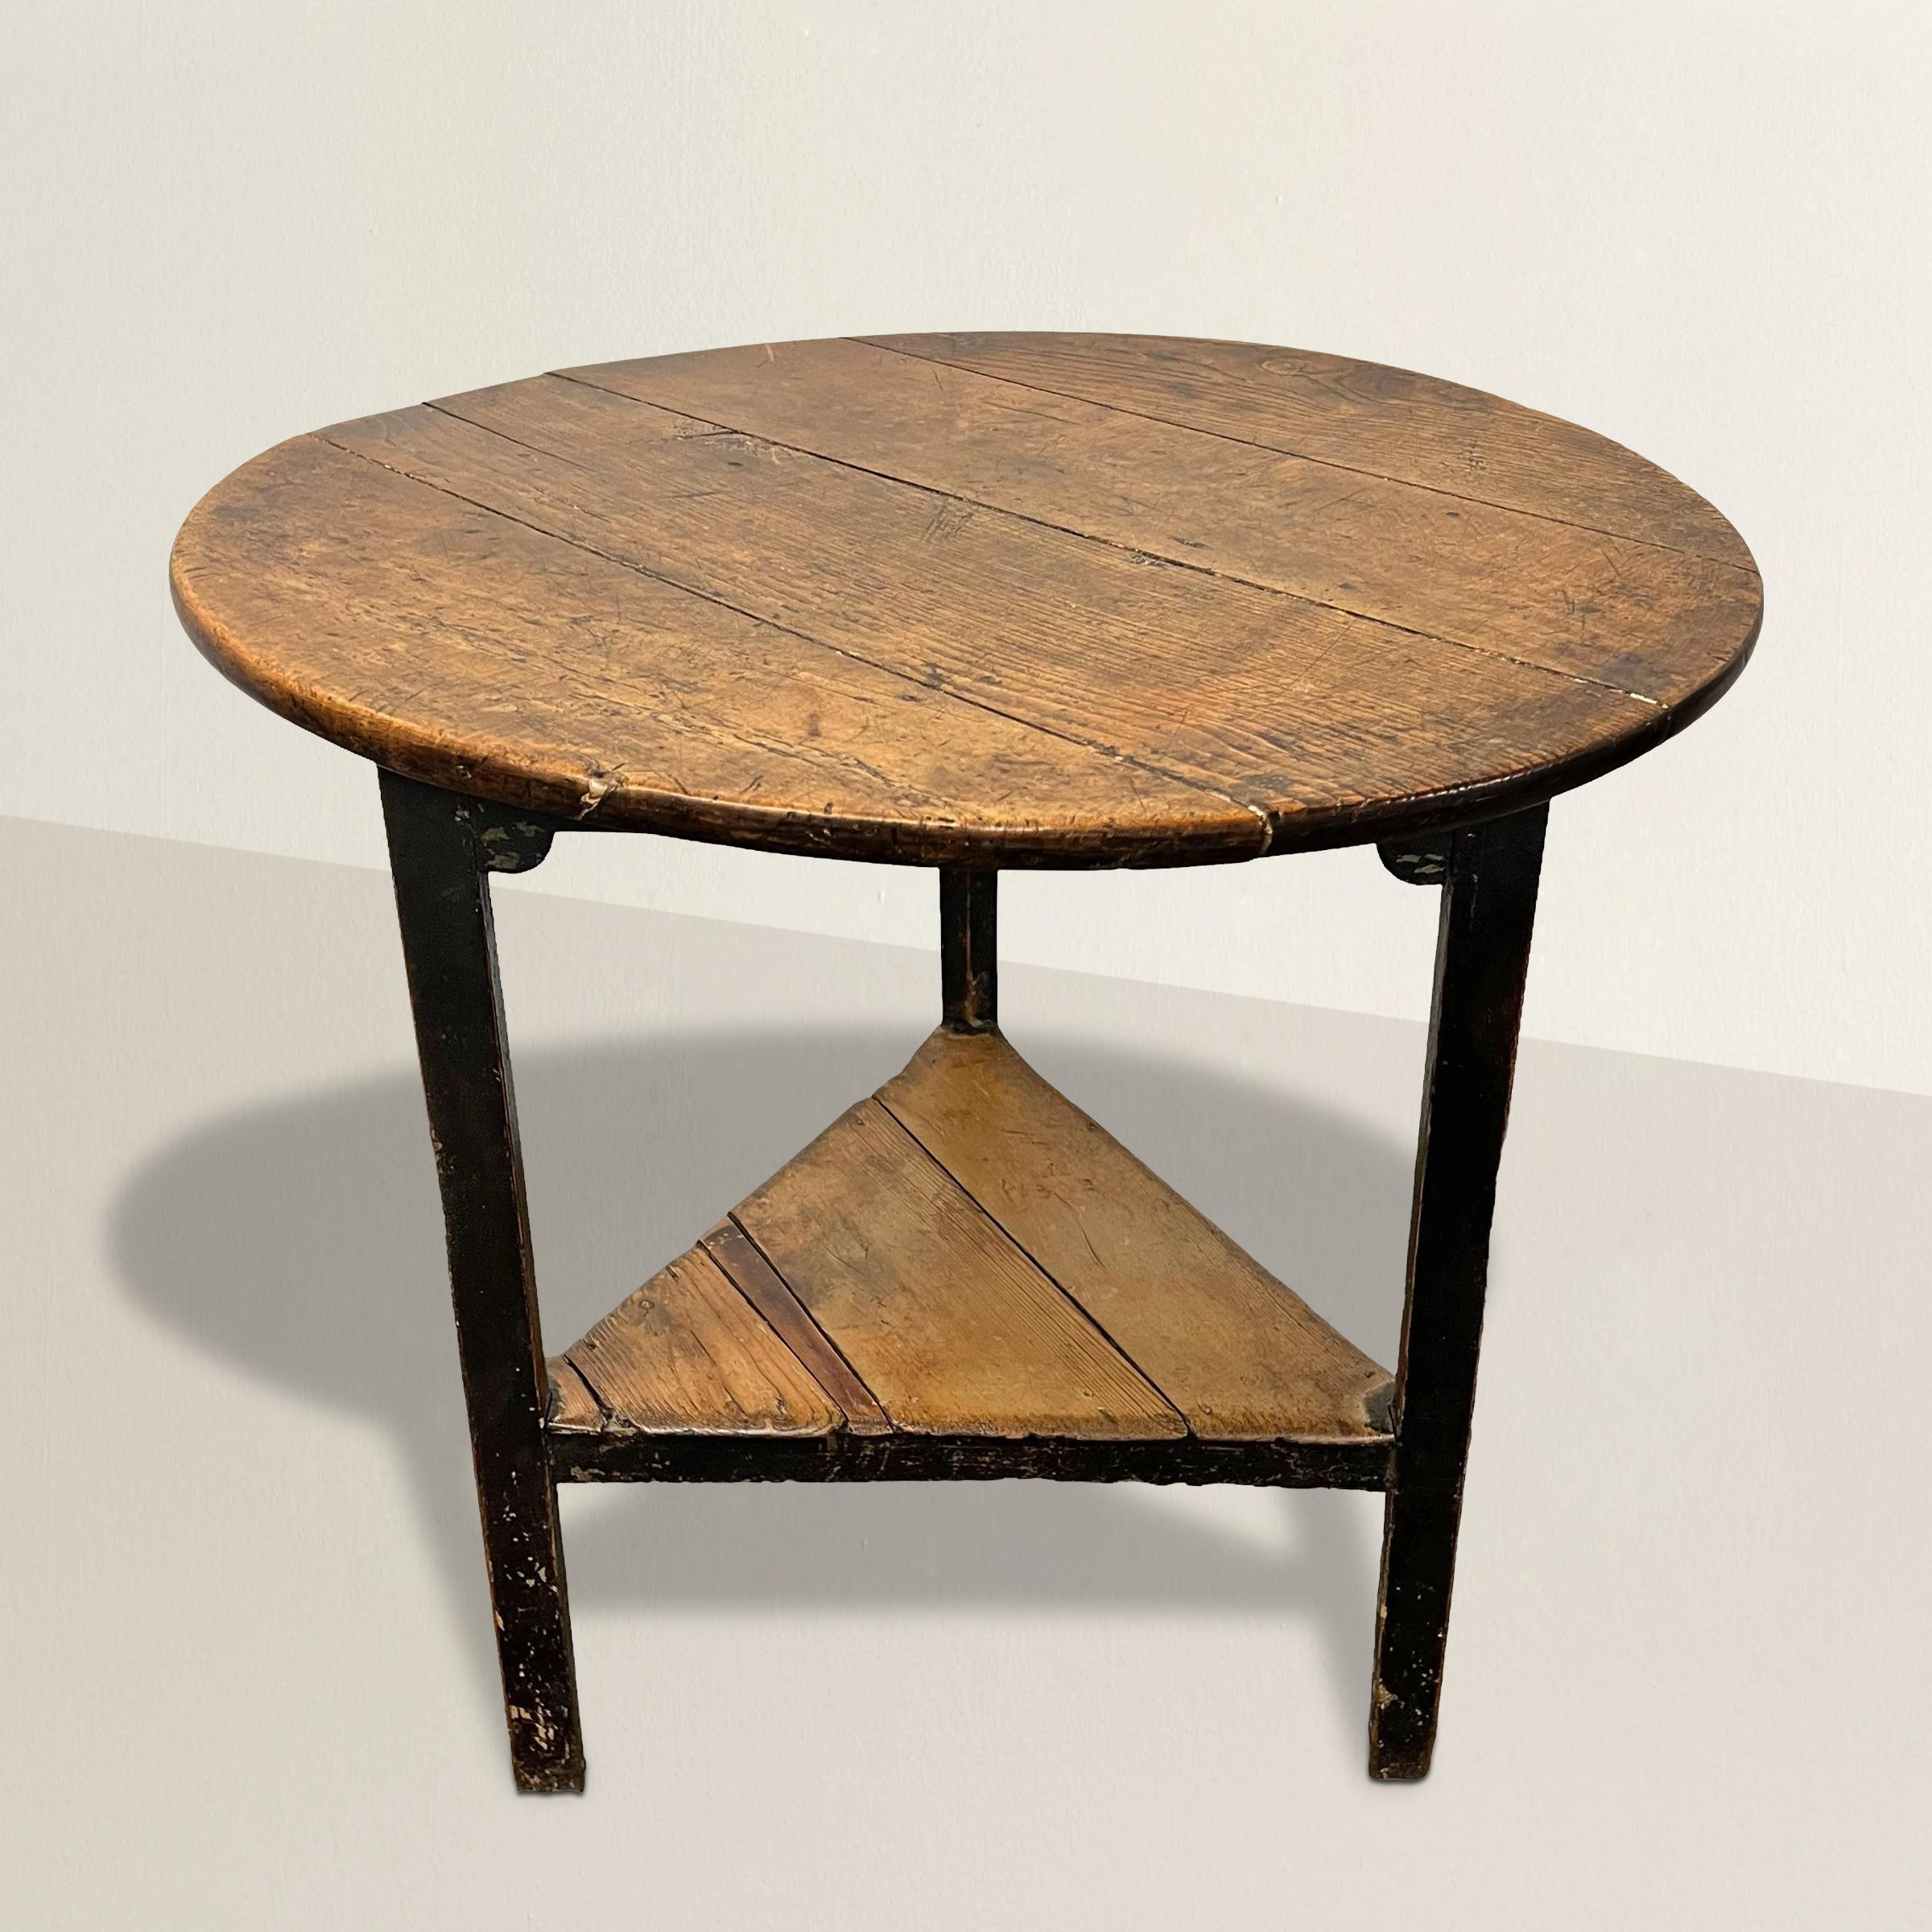 Témoignage de l'artisanat anglais du XVIIIe siècle, cette exceptionnelle table de grillon en bois d'orme est un meuble captivant. Son plateau rond et son étagère sont patinés et témoignent des années passées. Soutenu par trois pieds élégamment